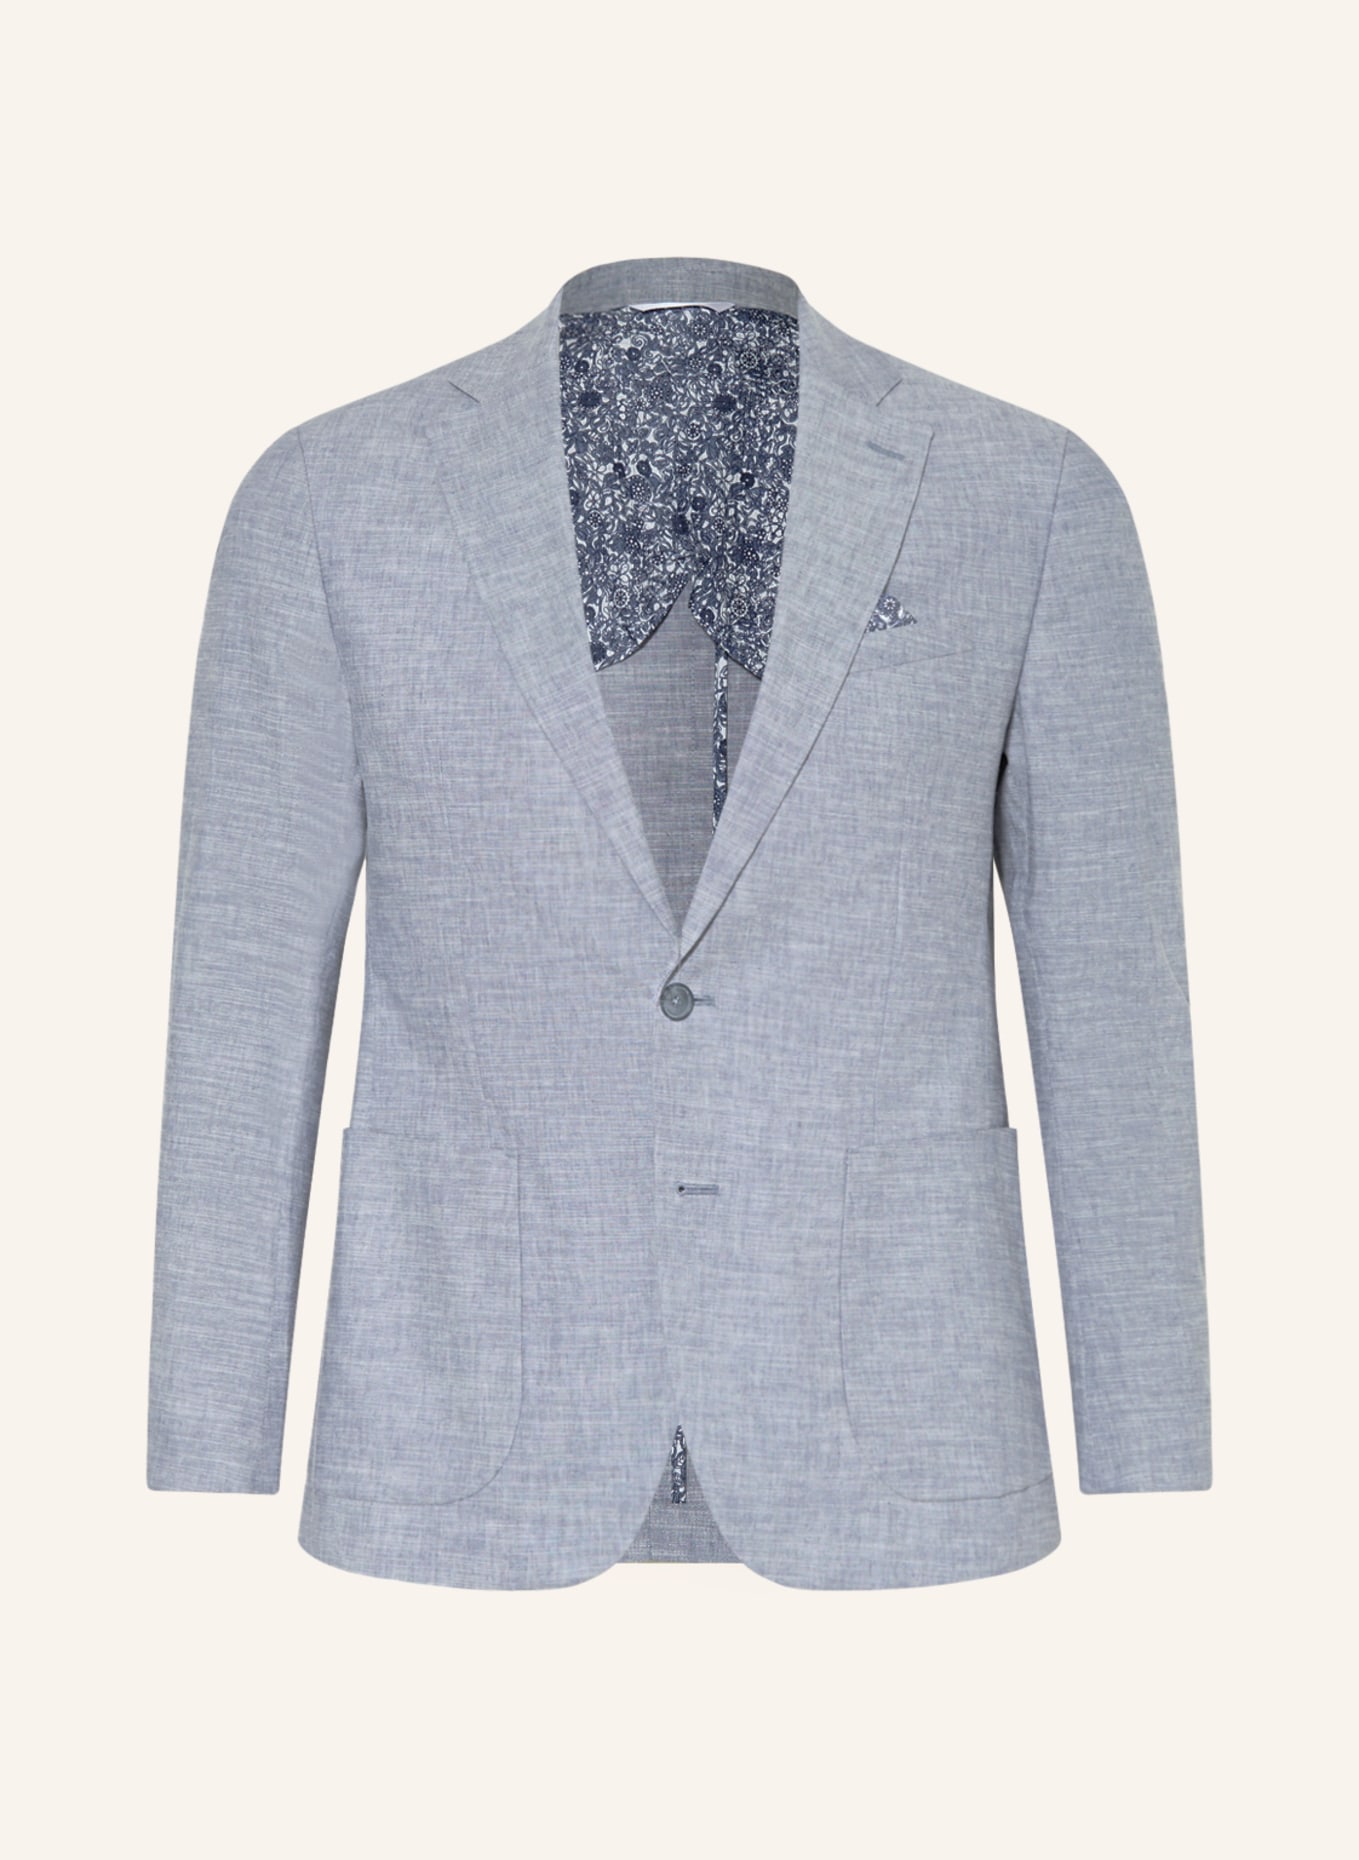 PAUL Suit jacket slim fit with linen, Color: 001 Light Blue (Image 1)